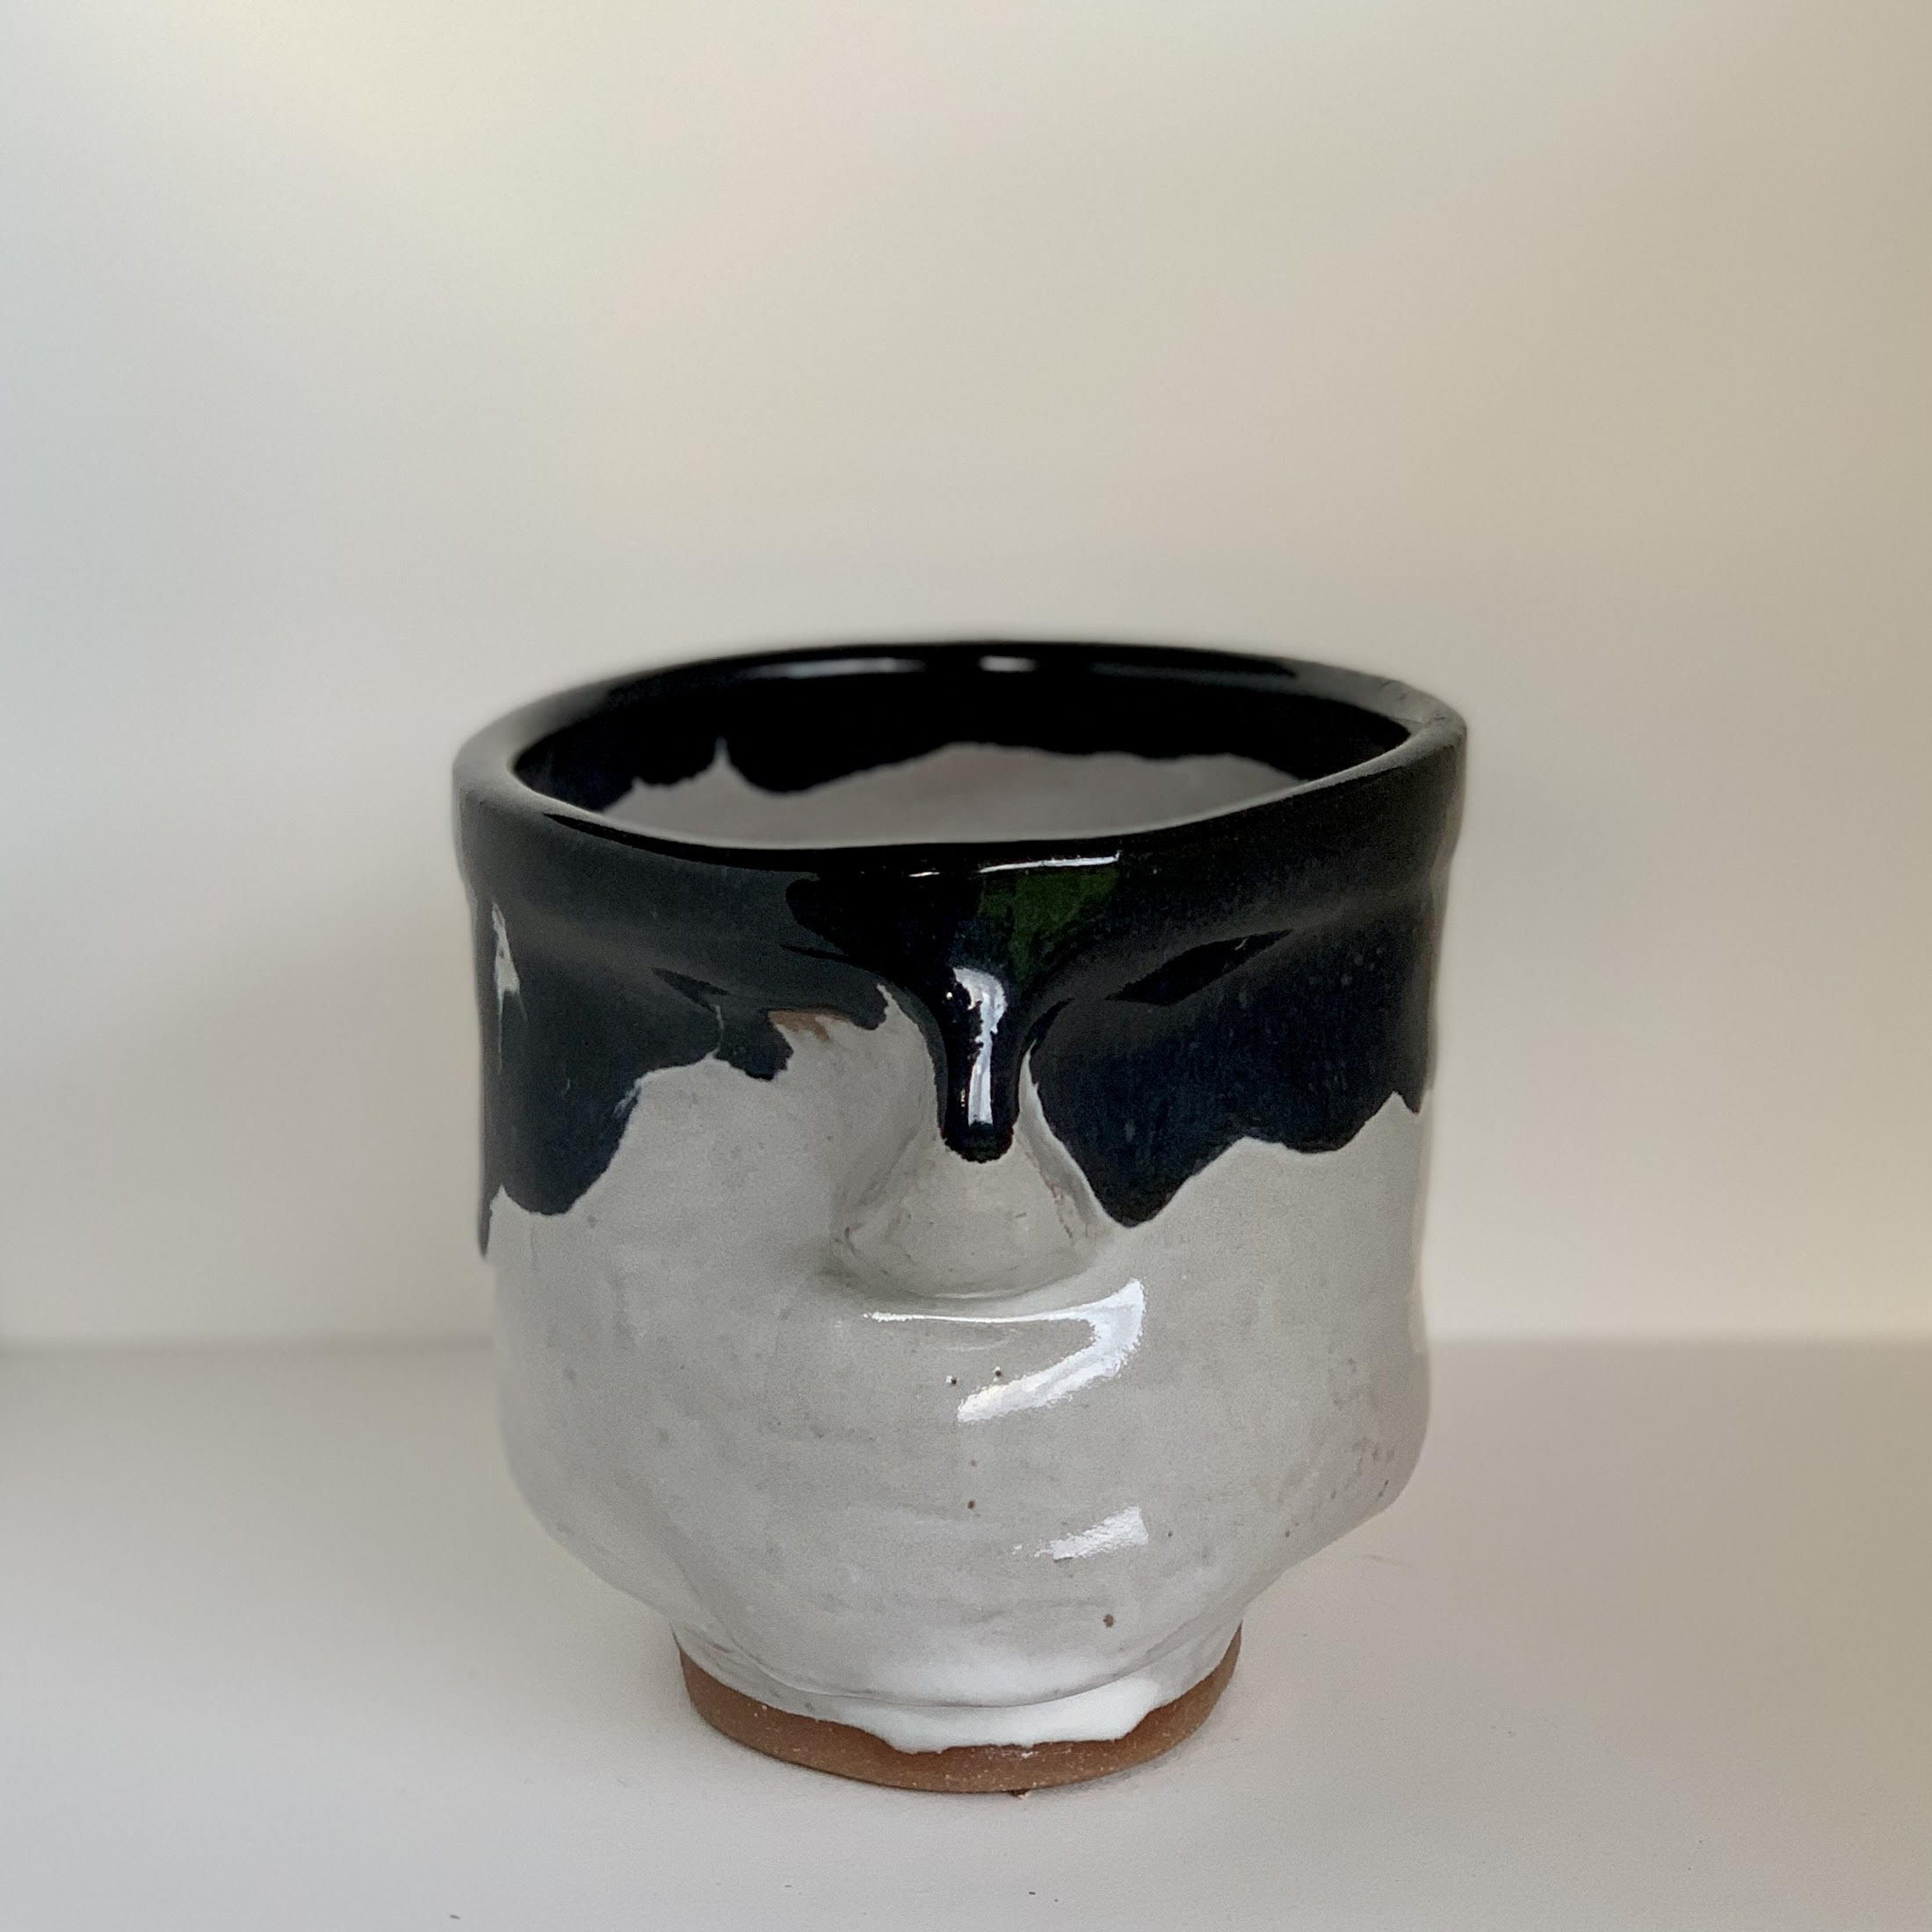 Melting Bandit Mug with Sotos White Glaze